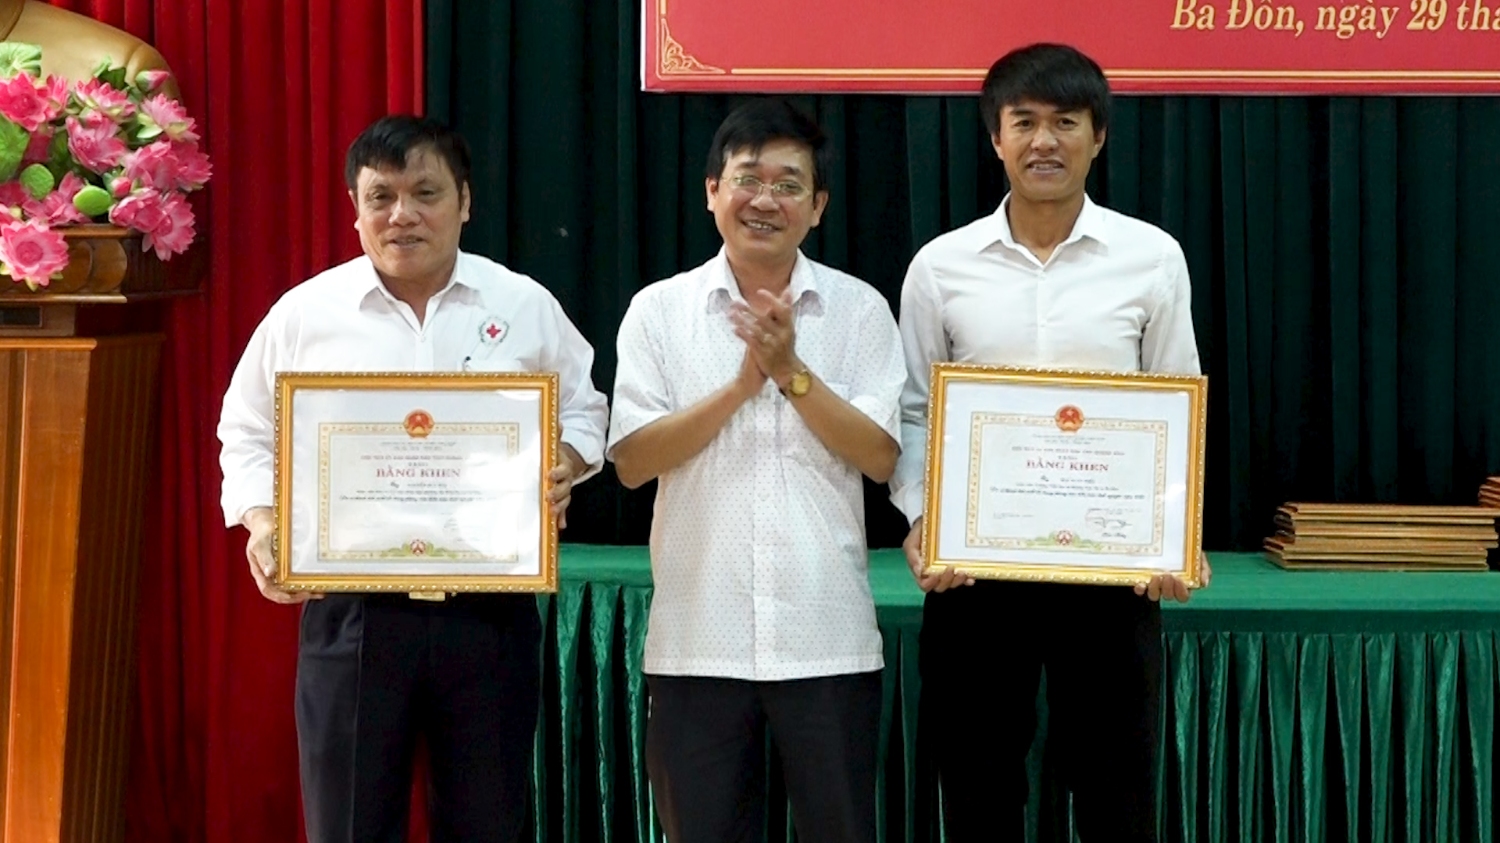 UBND tỉnh Quảng Bình tặng Bằng khen cho 02 cá nhân vì đã có thành tích trong phong trào HMTN của thị xã trong năm 2020